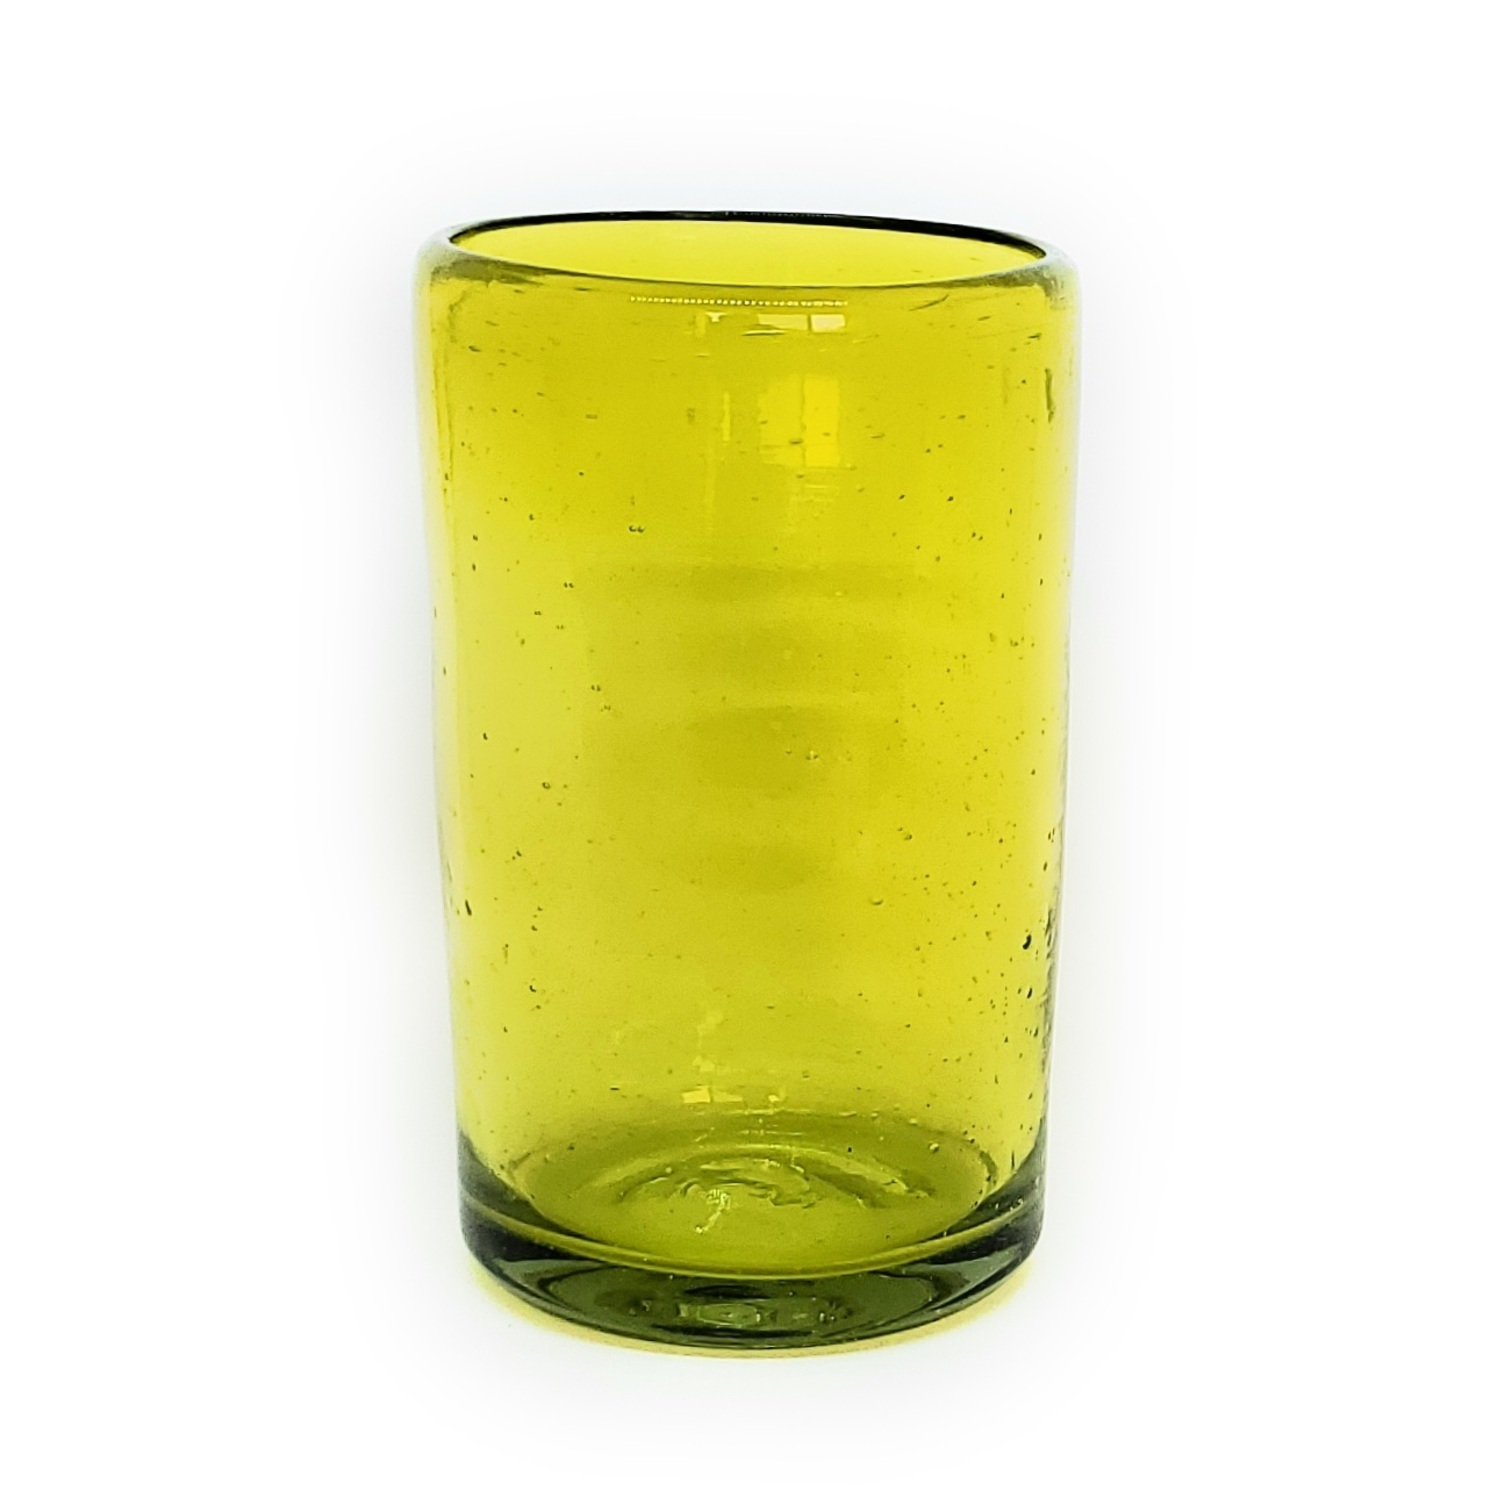 Colores Solidos al Mayoreo / vasos grandes color amarillos / Éstos artesanales vasos le darán un toque clásico a su bebida favorita.